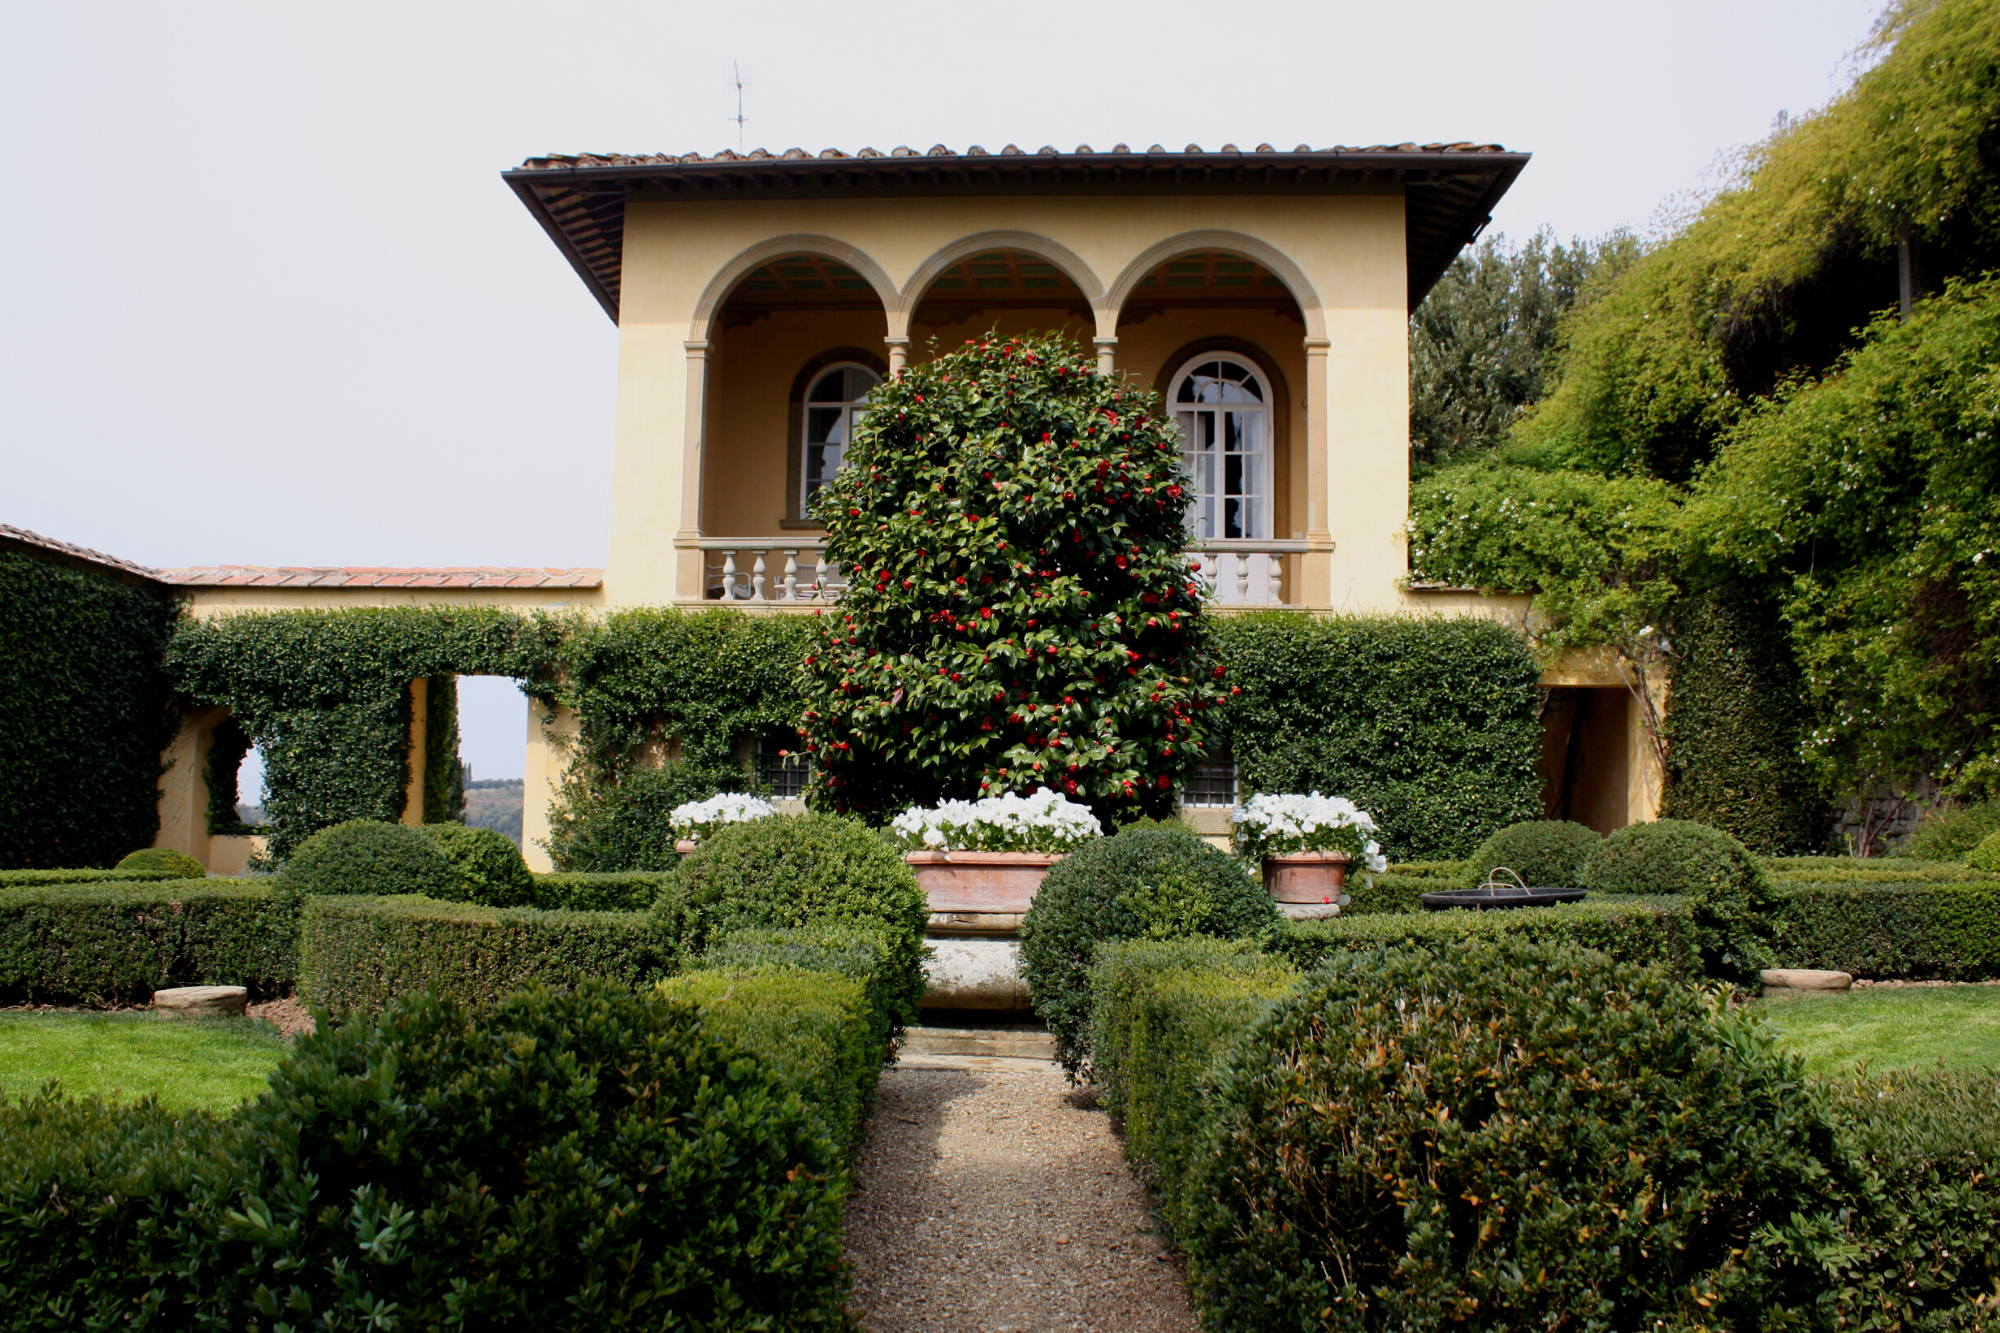 Villa Le Balze from the Lemon Garden during springtime.